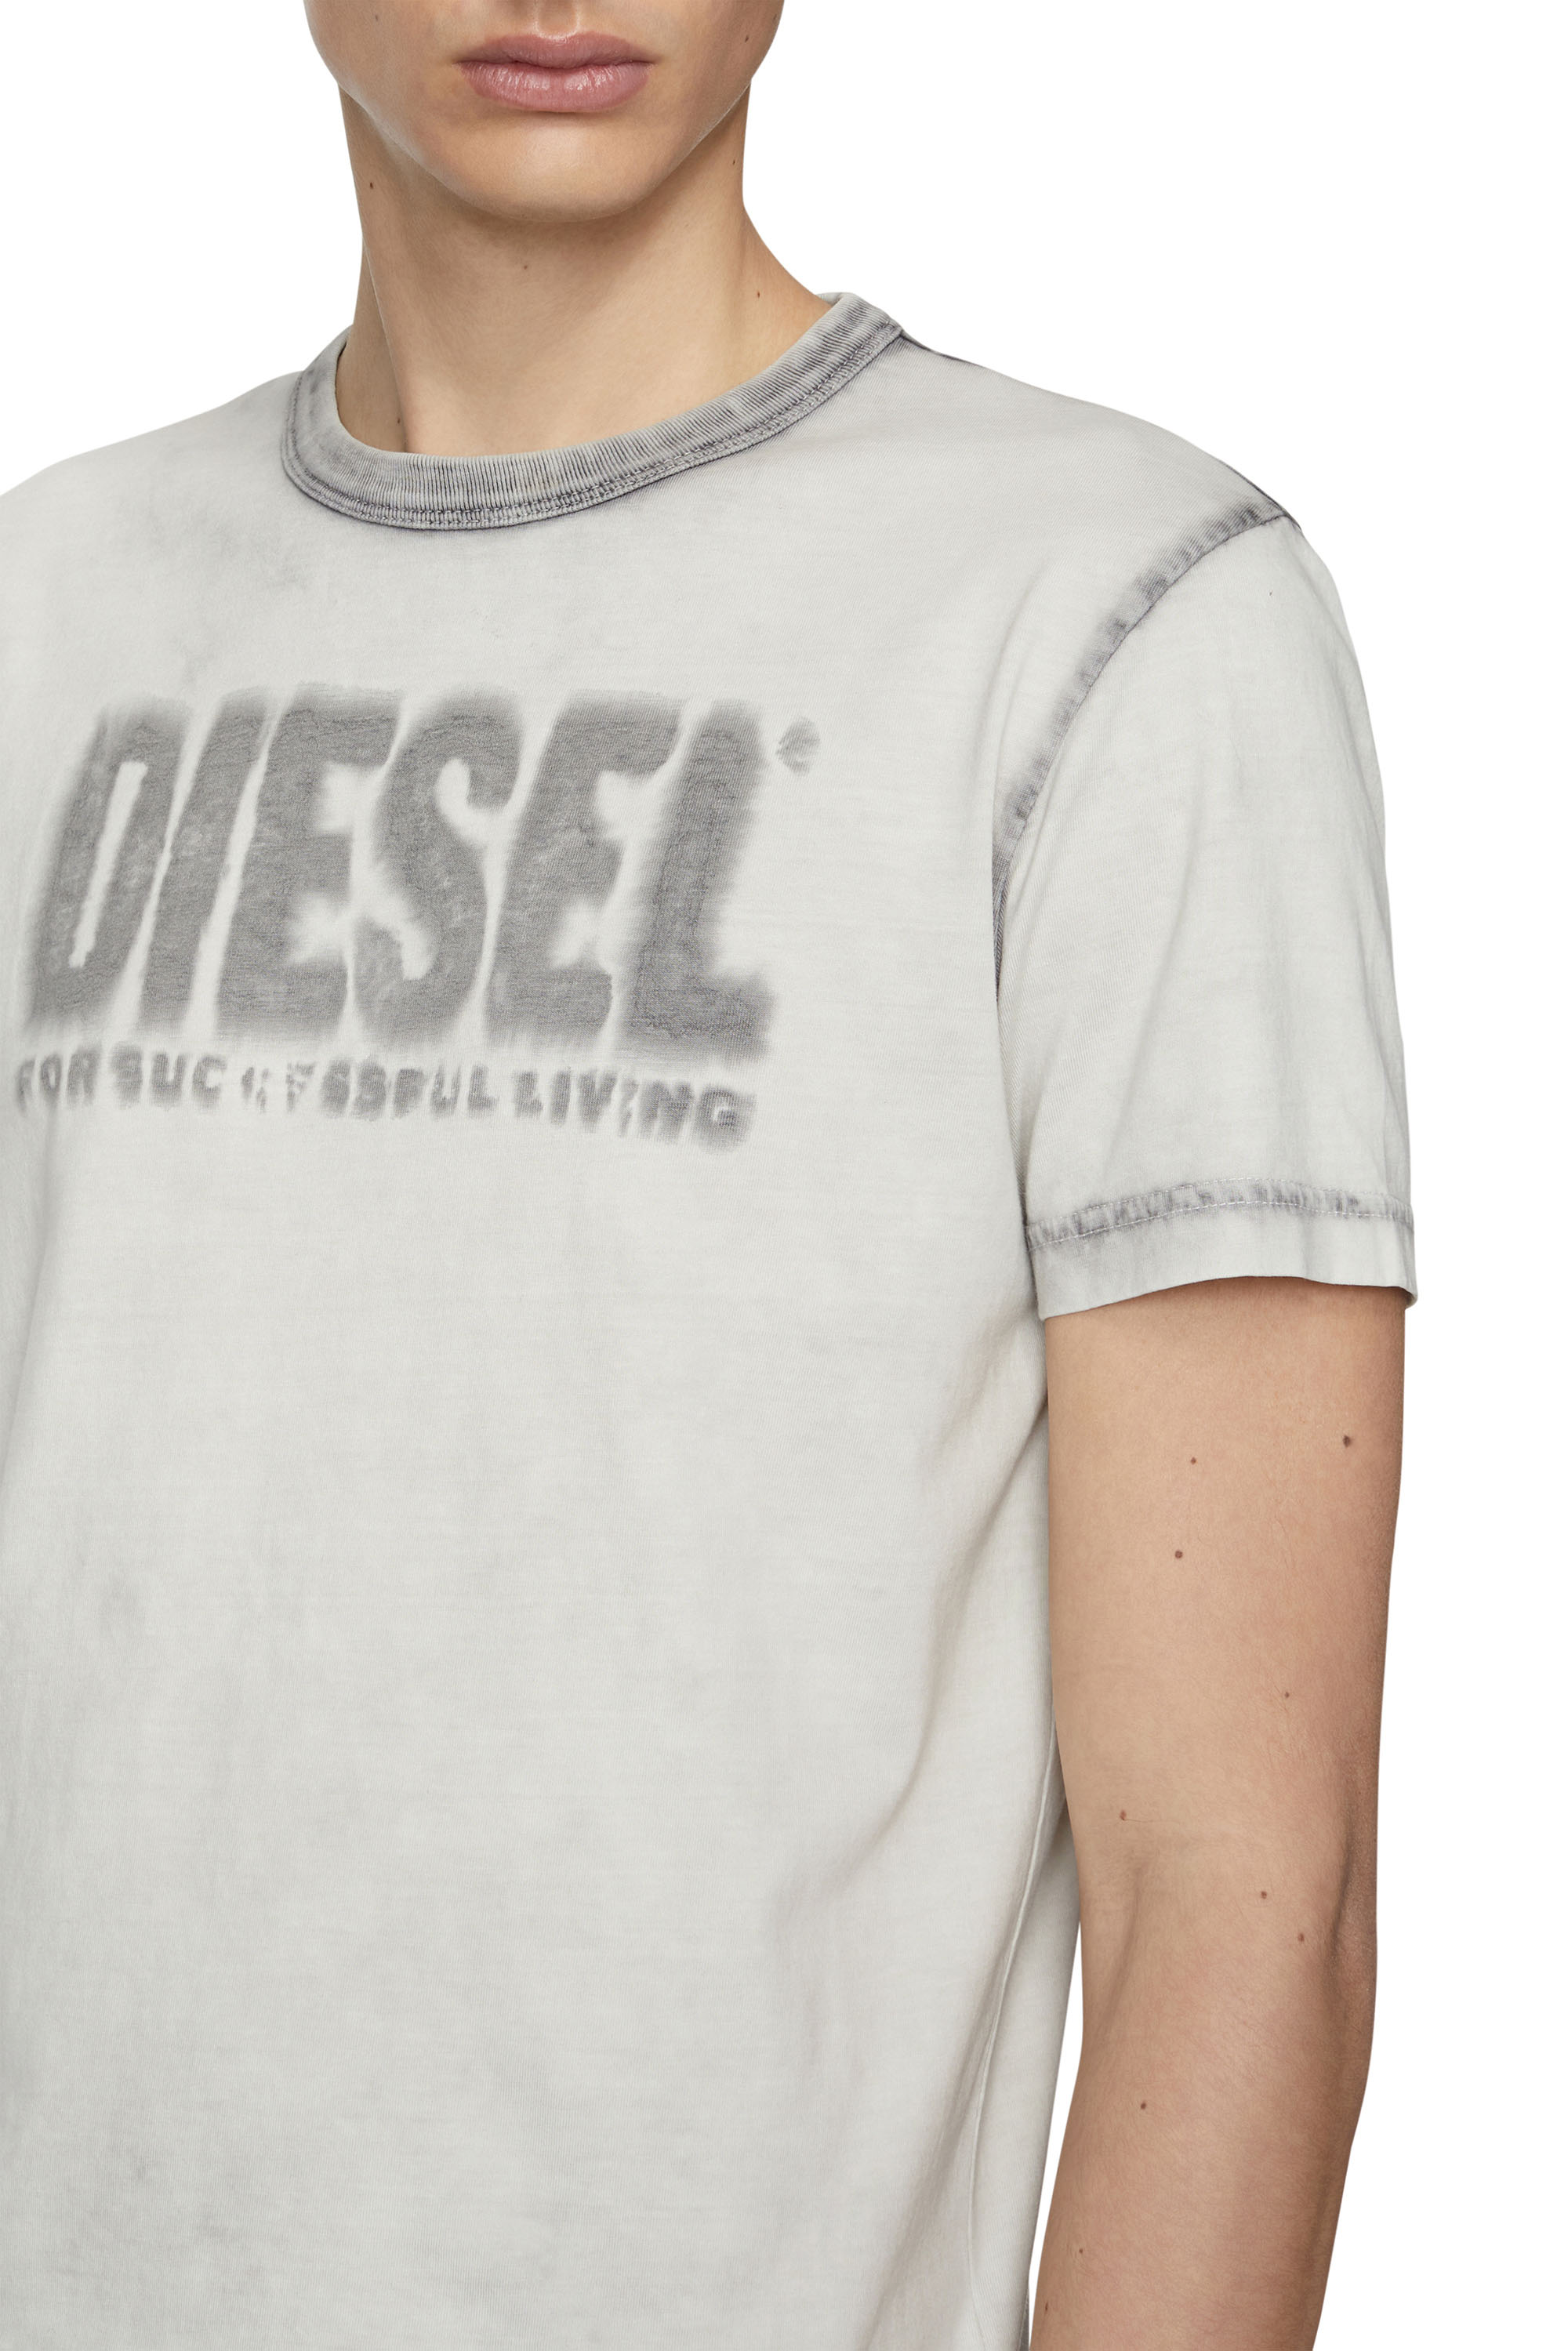 Diesel Maglia a maniche corte camiseta t-shirt Uomo Vestiti Top e t-shirt T-shirt T-shirt con stampe Diesel T-shirt con stampe 